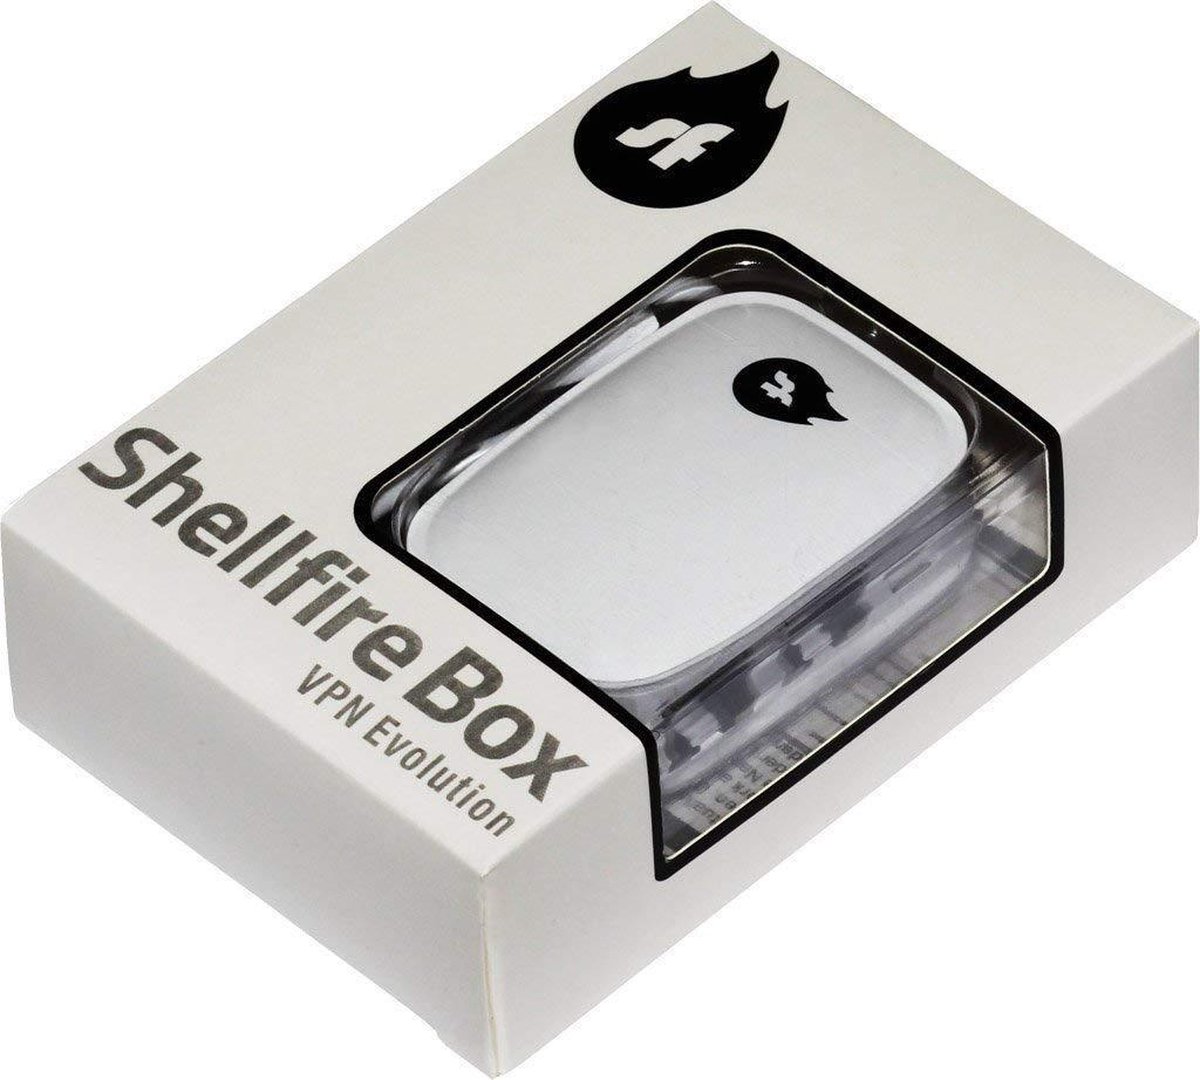 Shellfire box VPN | bol.com